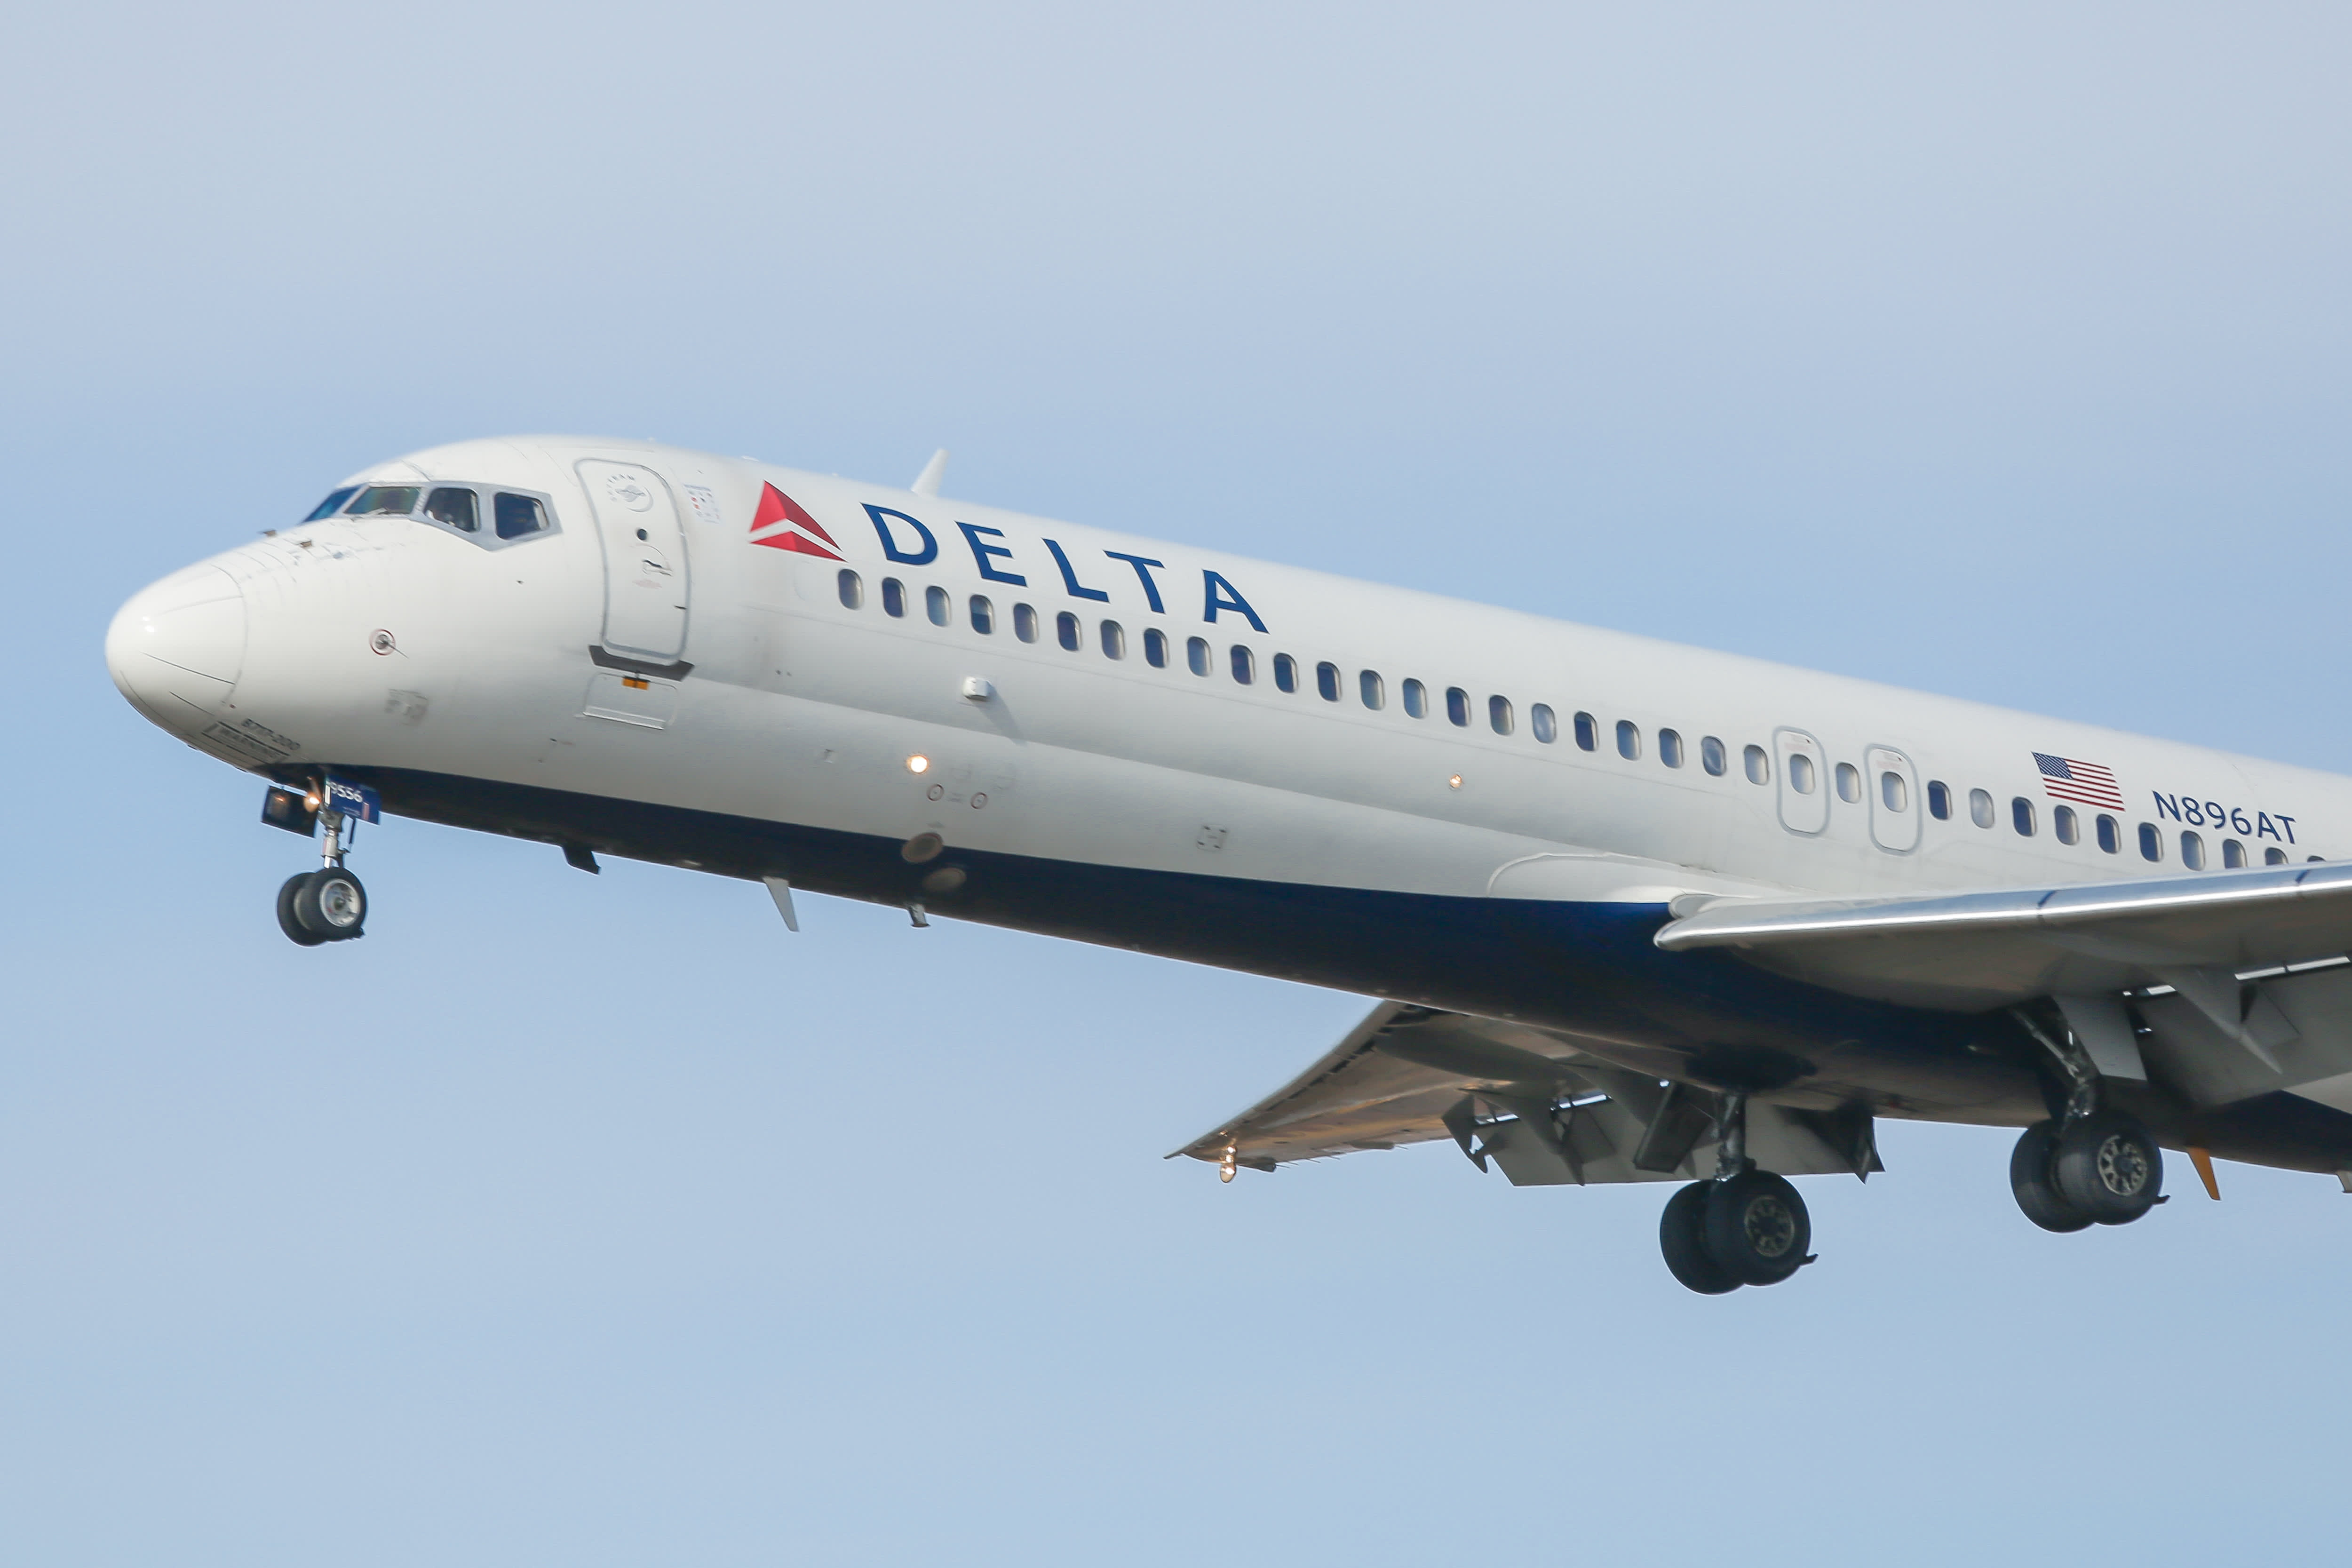 Der CEO von Delta sagt, die Fluggesellschaft sei mit den SkyMiles-Änderungen „zu weit gegangen“ und verspricht Anpassungen nach der Gegenreaktion der Vielflieger